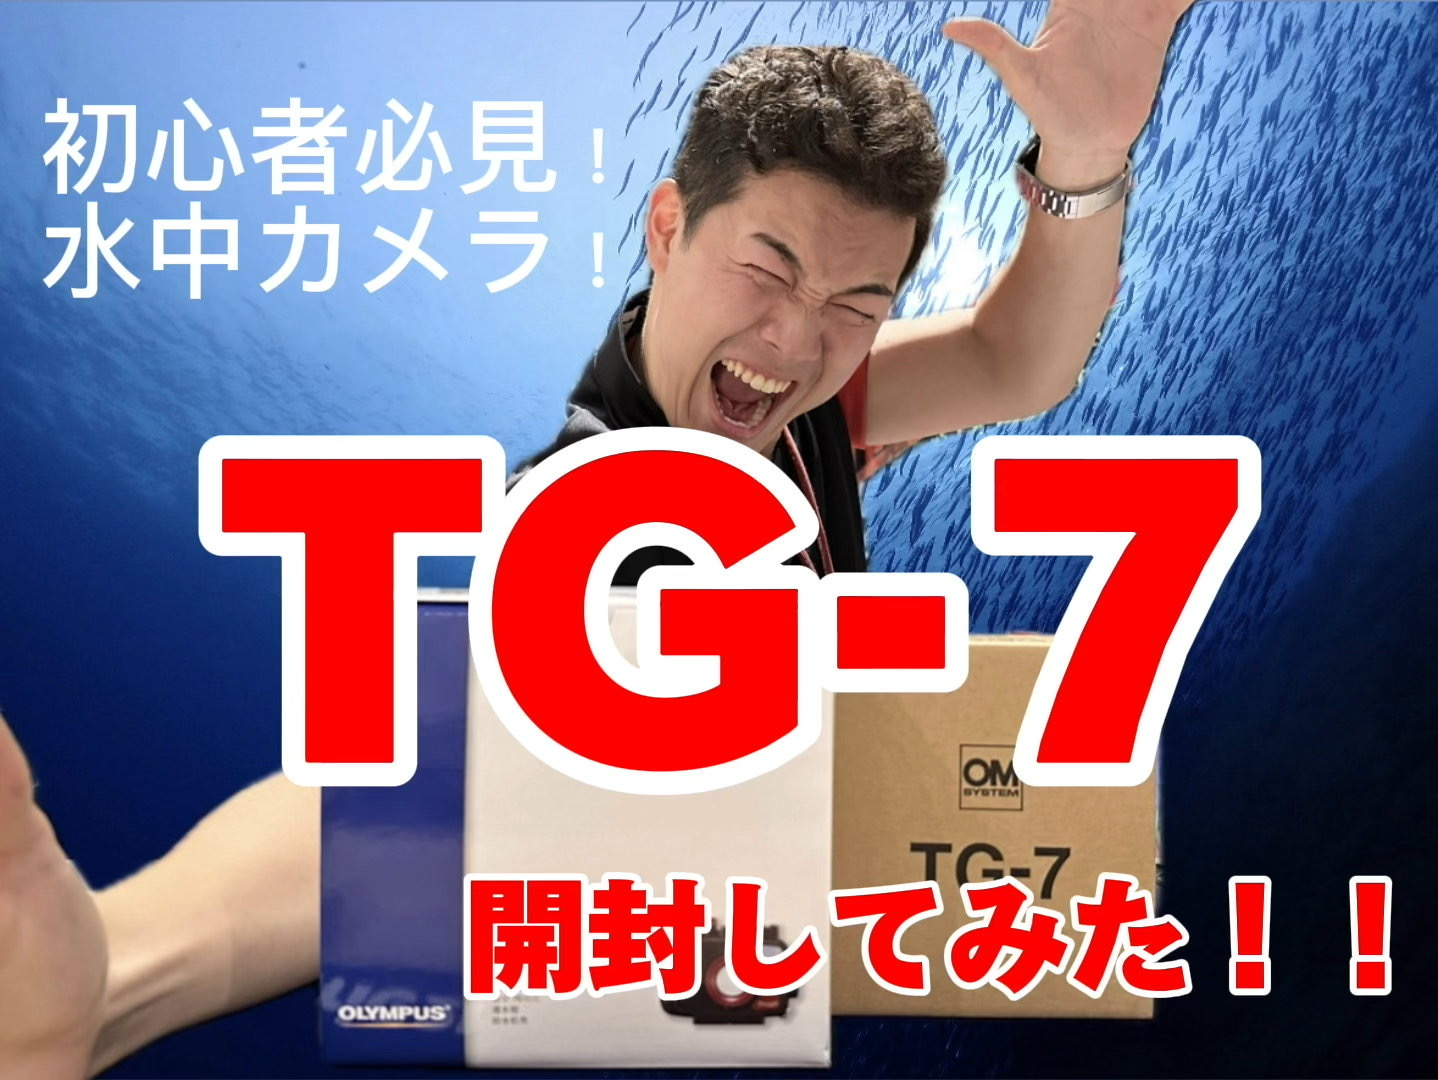 TG-7商品紹介